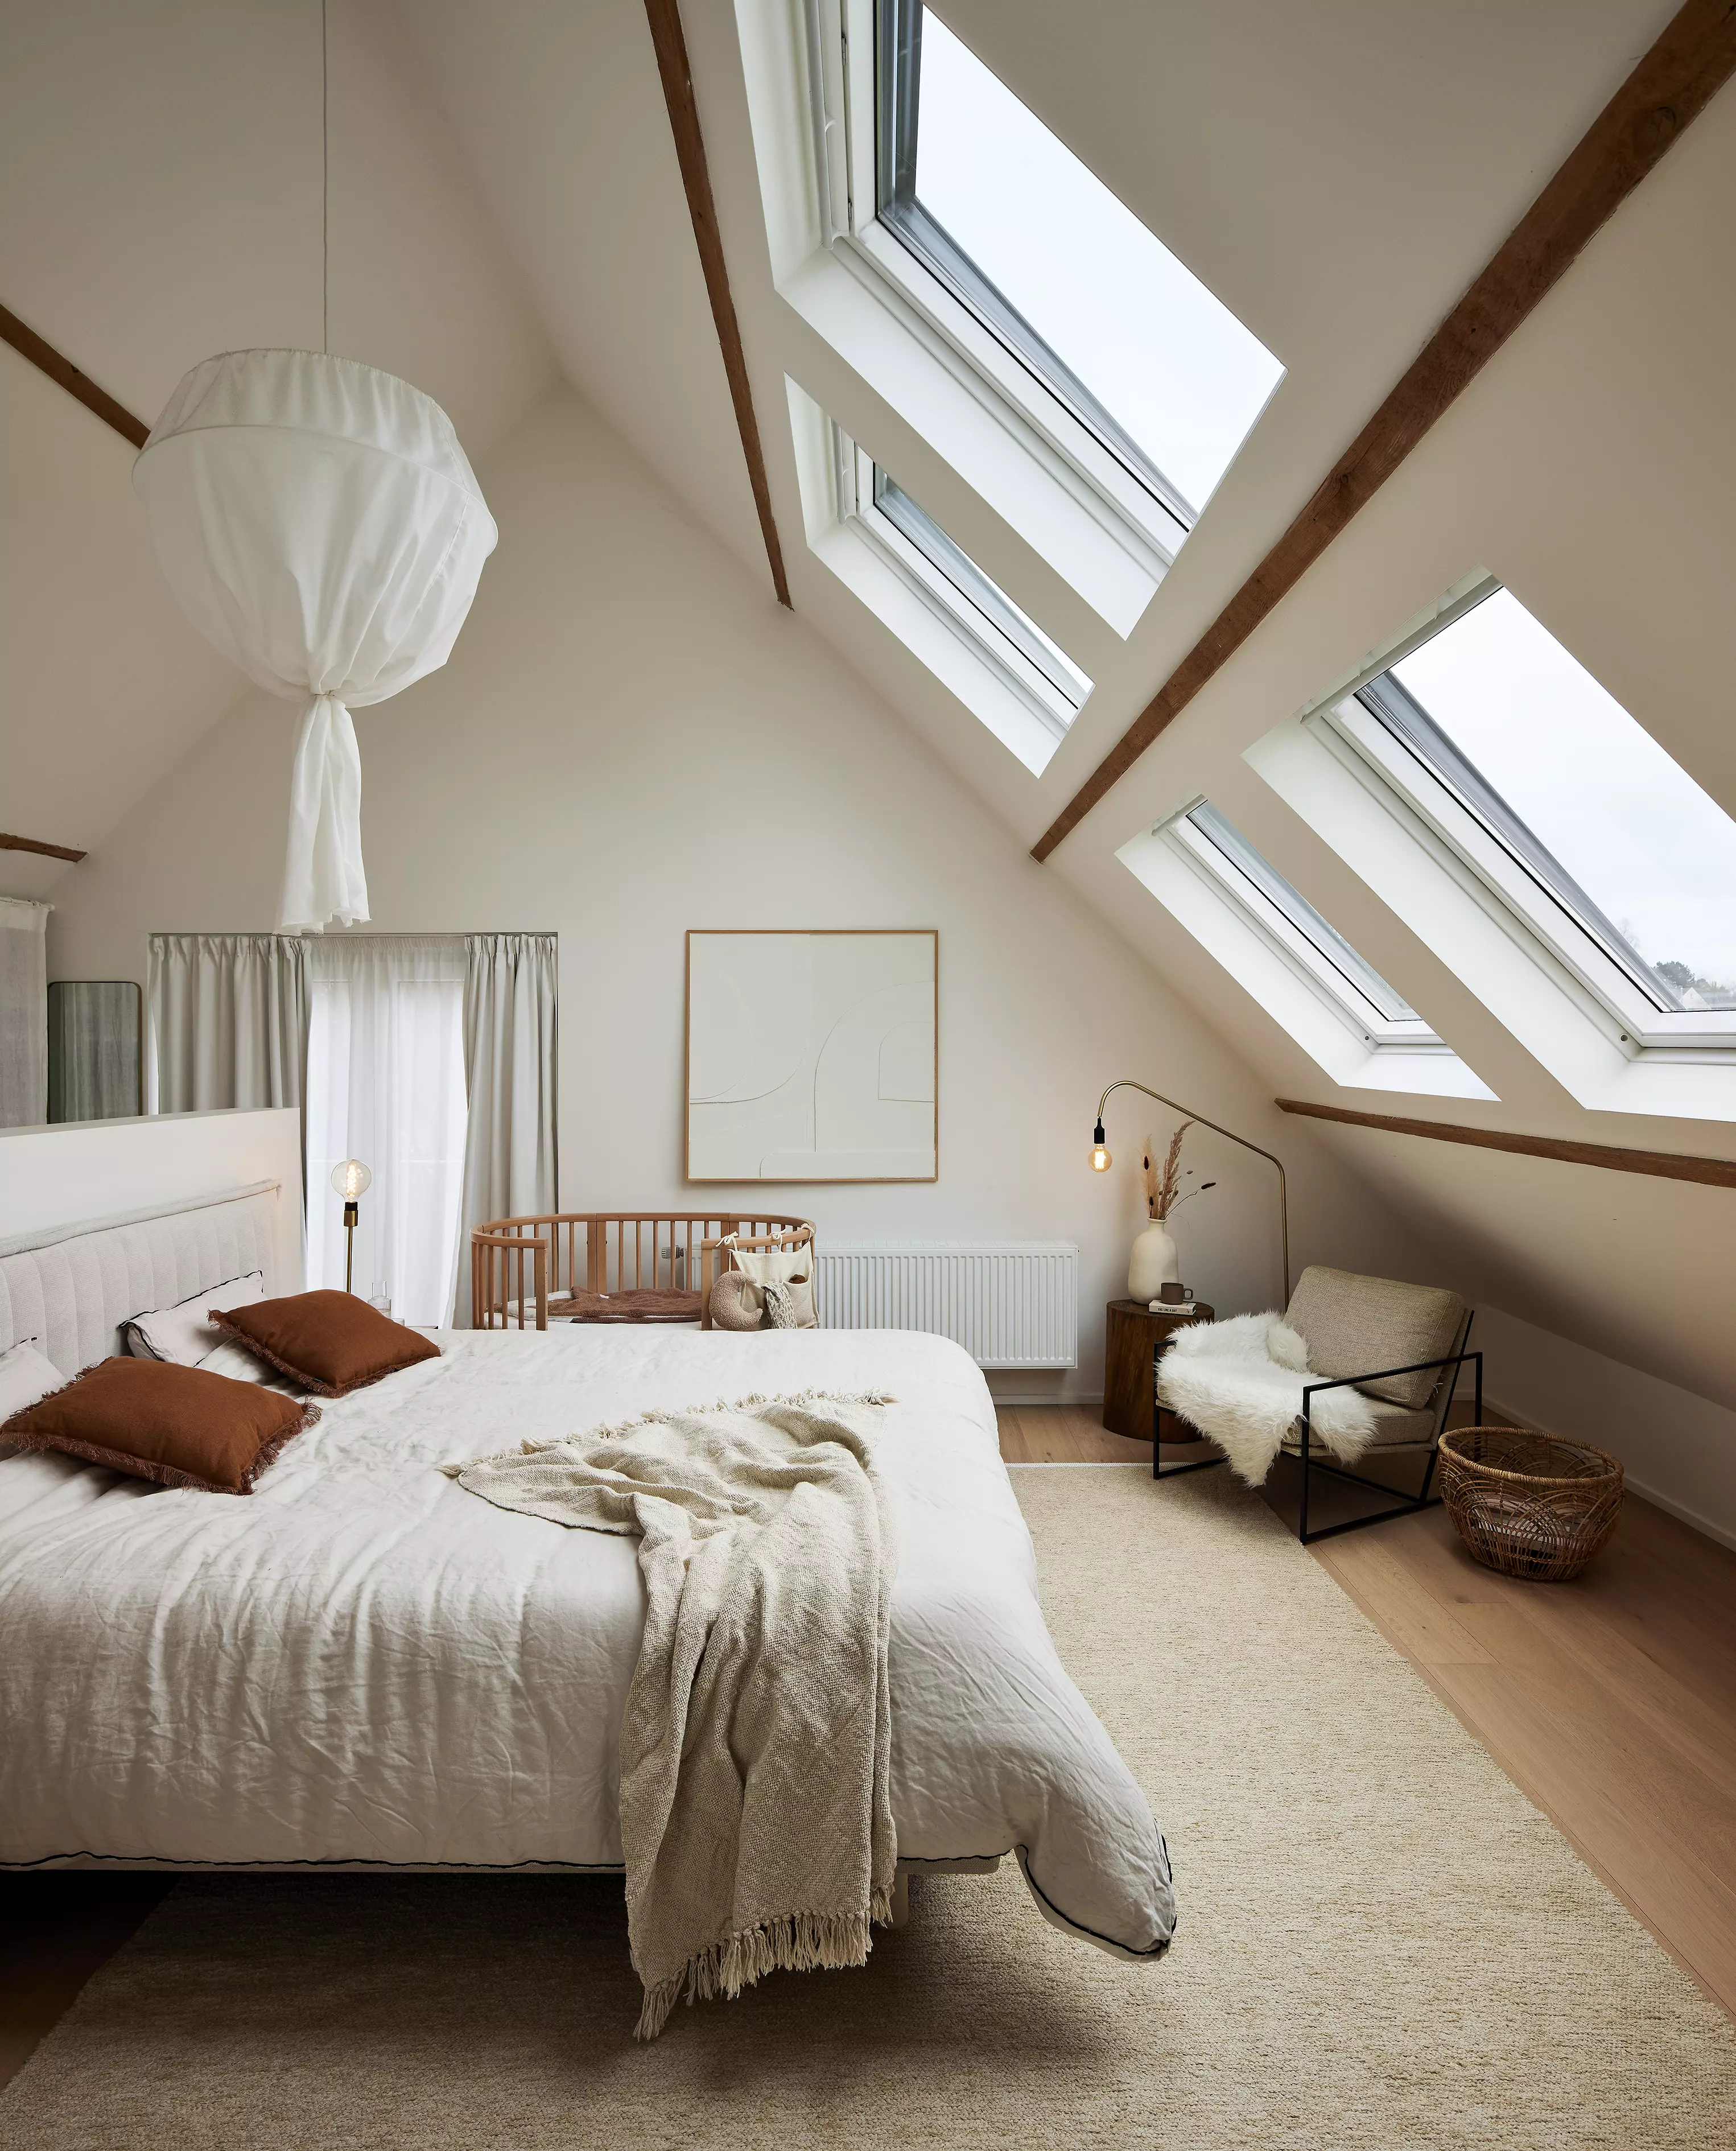 Chambre mansardée confortable avec literie douillette, poutres en bois et fenêtres de toit VELUX.